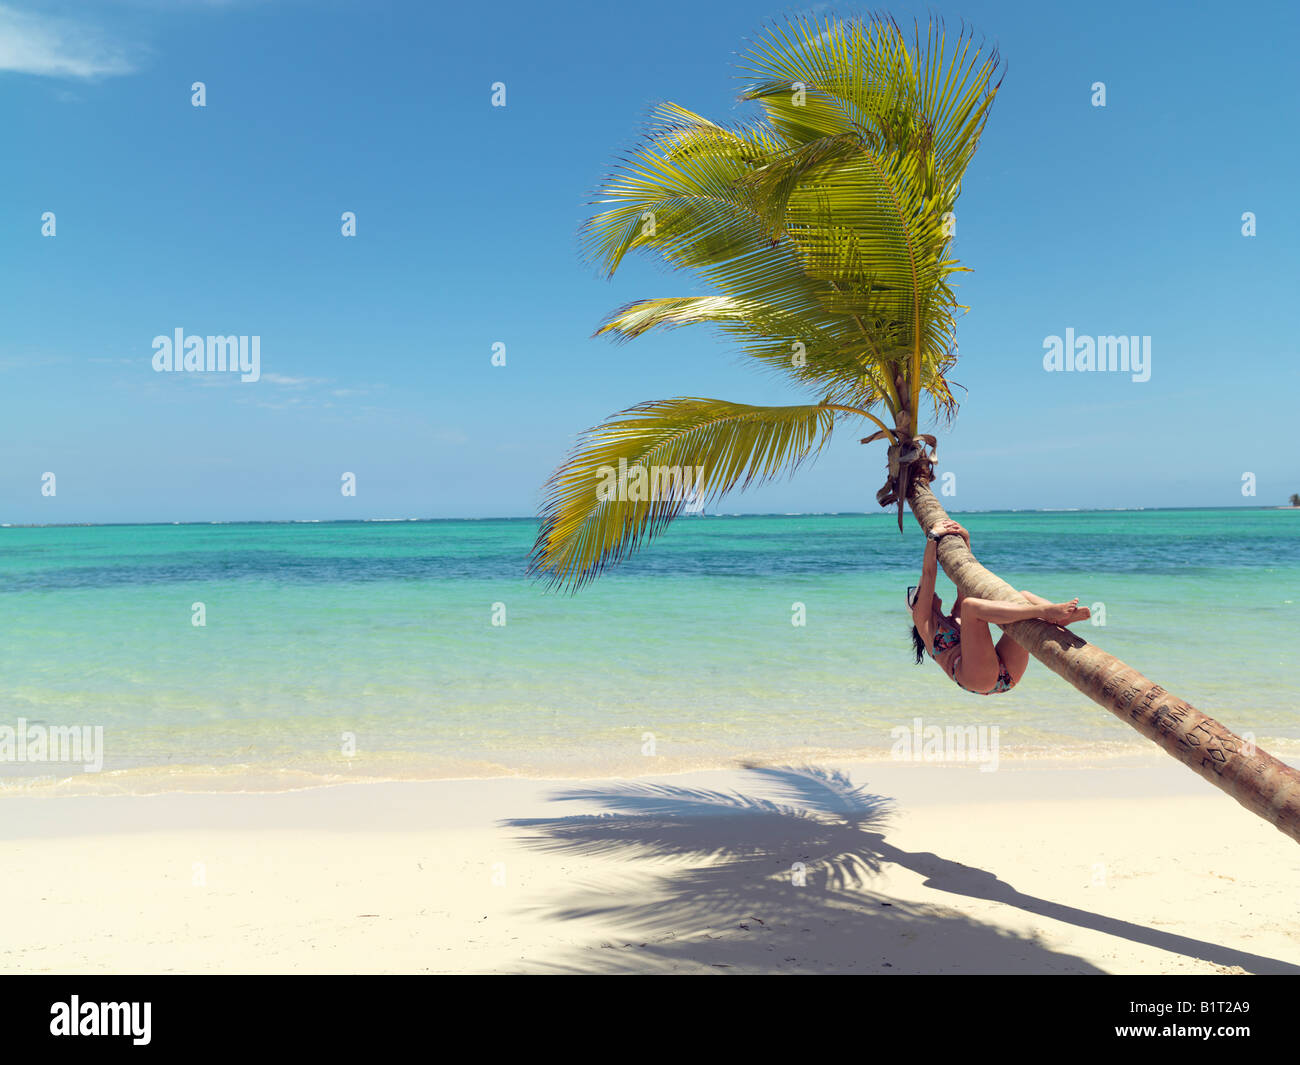 République dominicaine Punta Cana Bavaro Beach palmier sur une plage de sable blanc face à la mer avec young woman climbing tree Banque D'Images